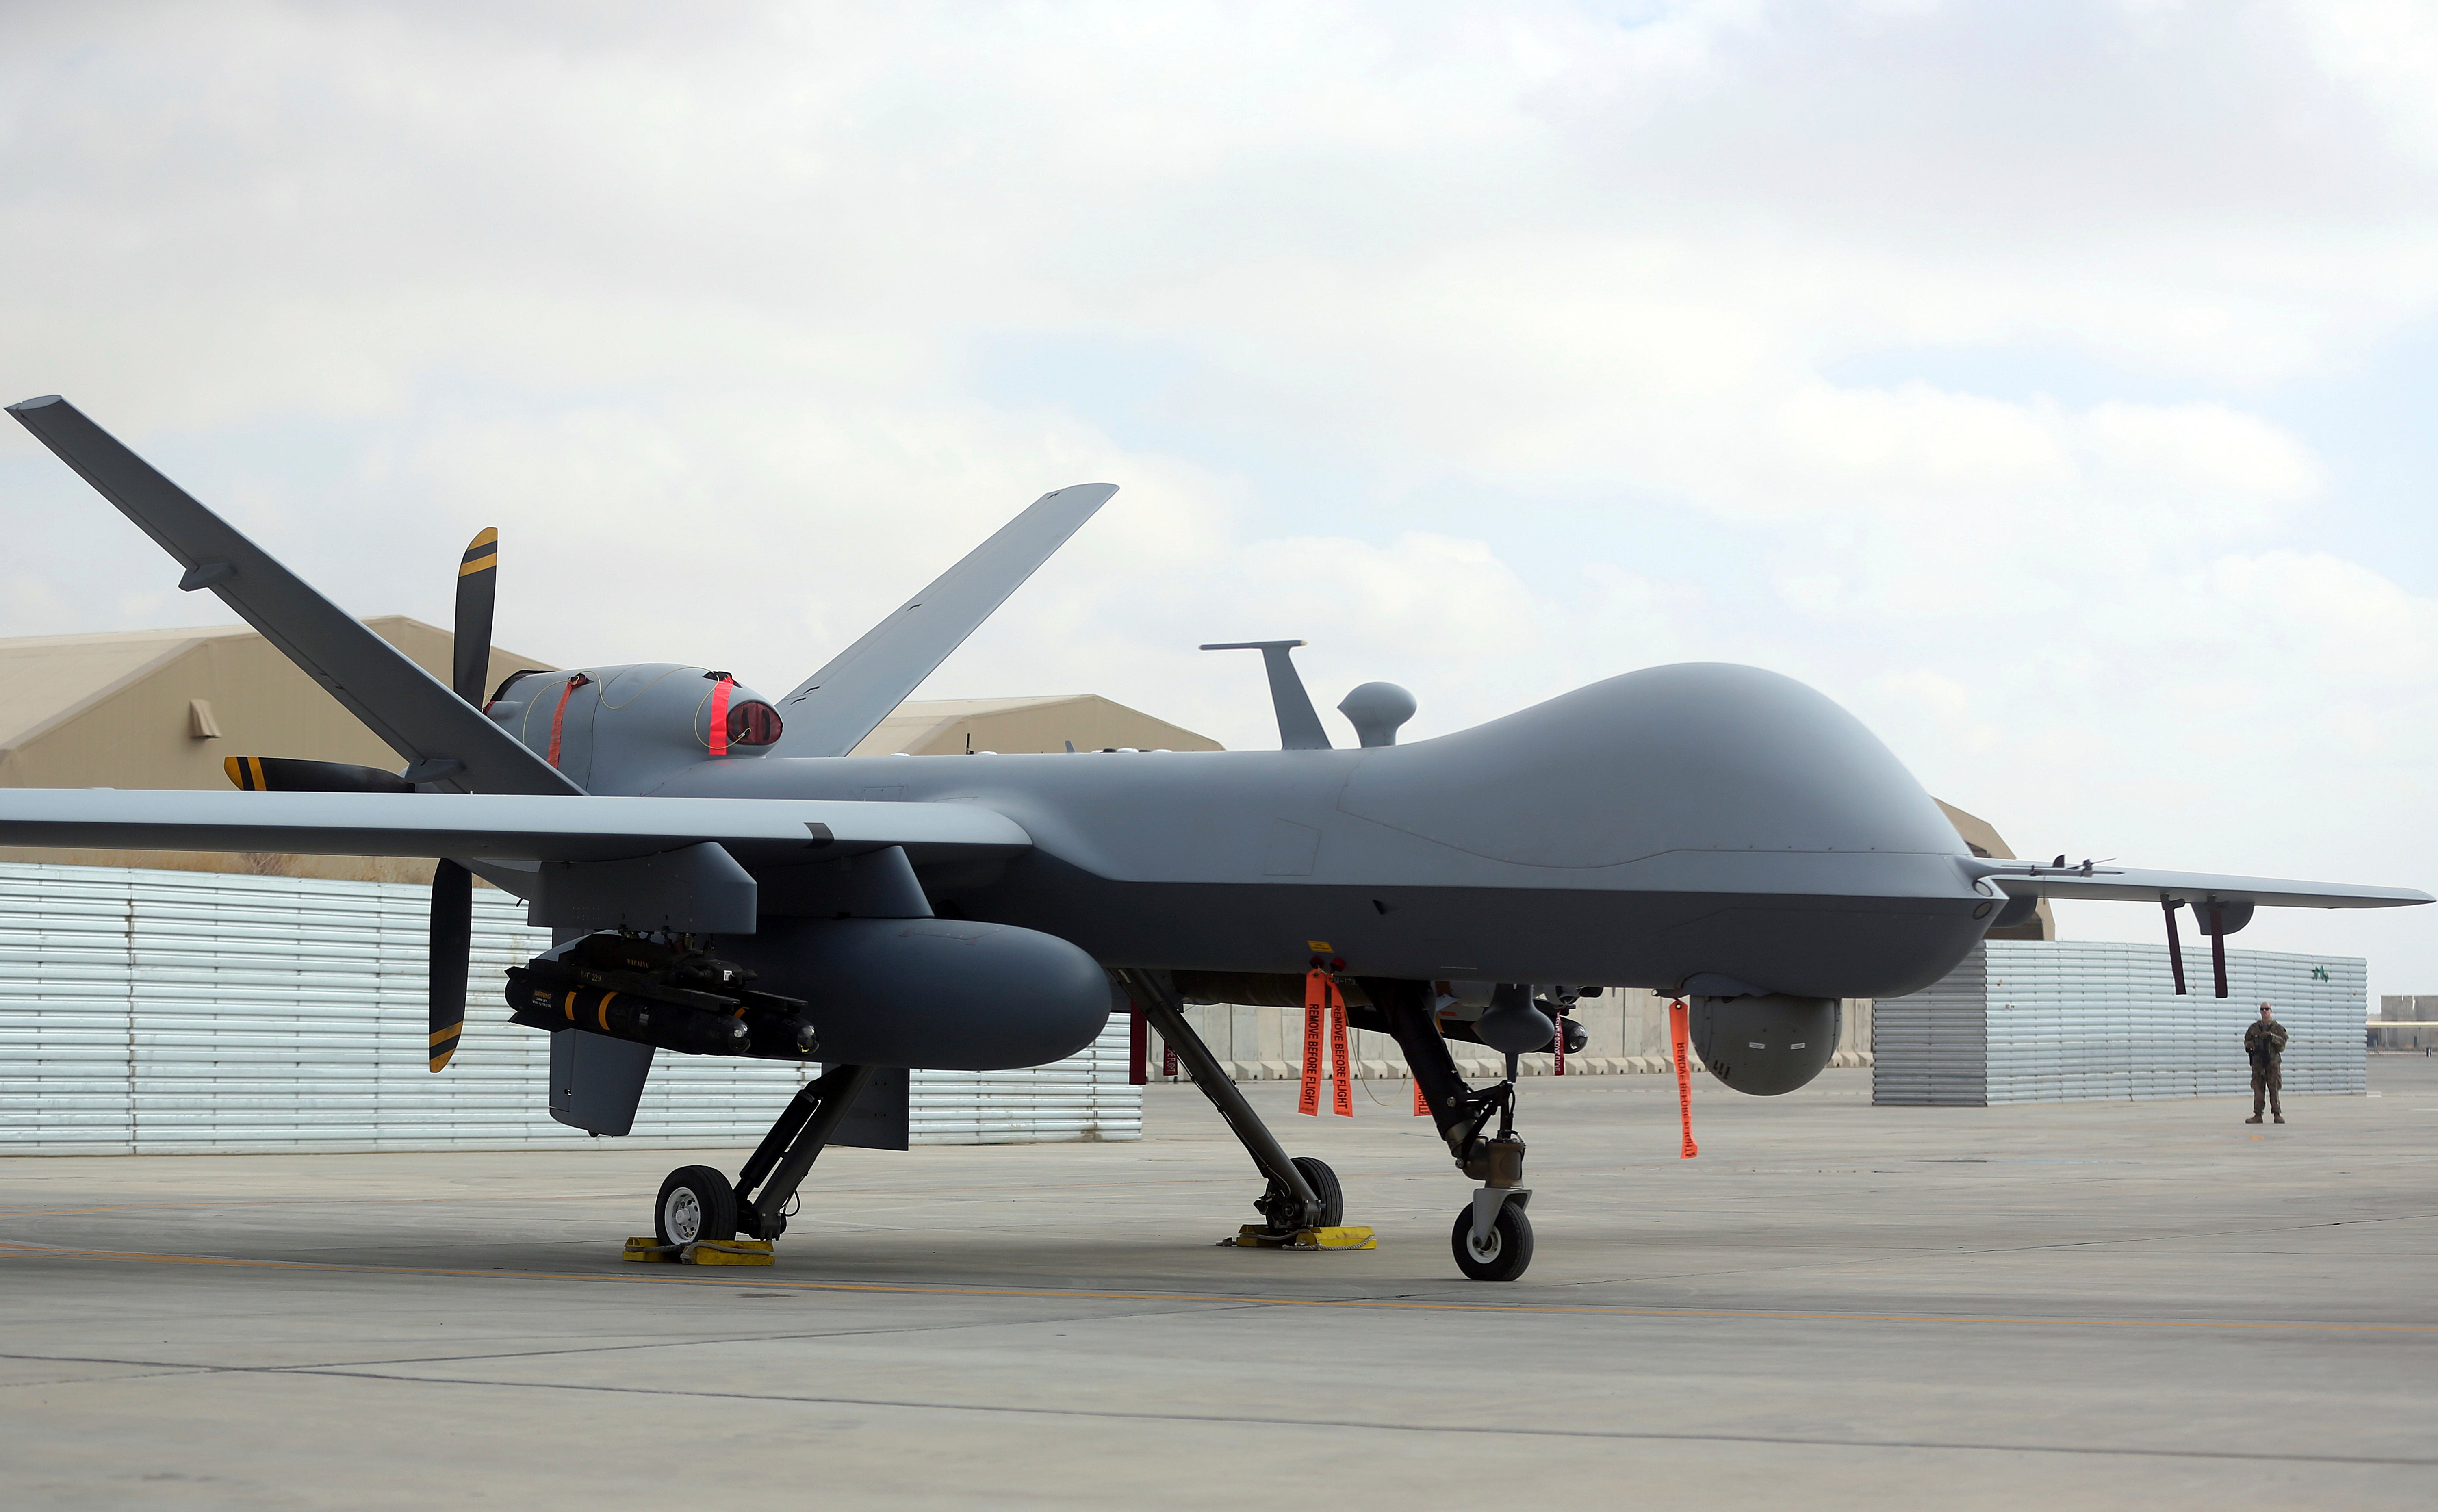 A US MQ-9 Reaper drone